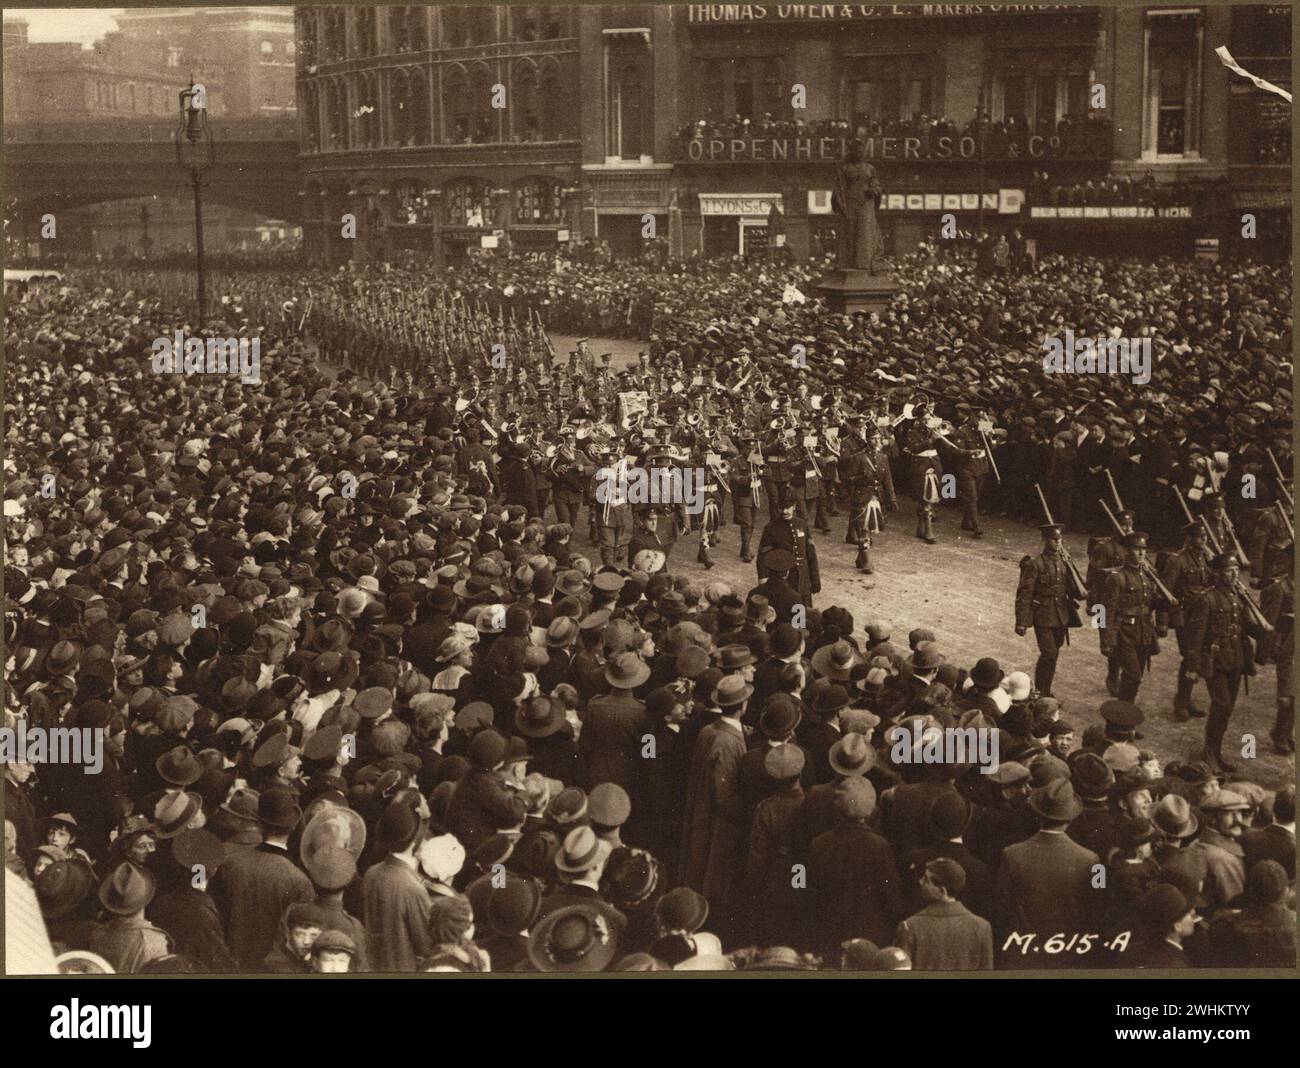 Flotteur de parade militaire du 'Flying Boat' pendant la première Guerre mondiale Une grande foule regardant le défilé passer. Images des Forces canadiennes pendant la première Guerre mondiale Londres 1918 Banque D'Images